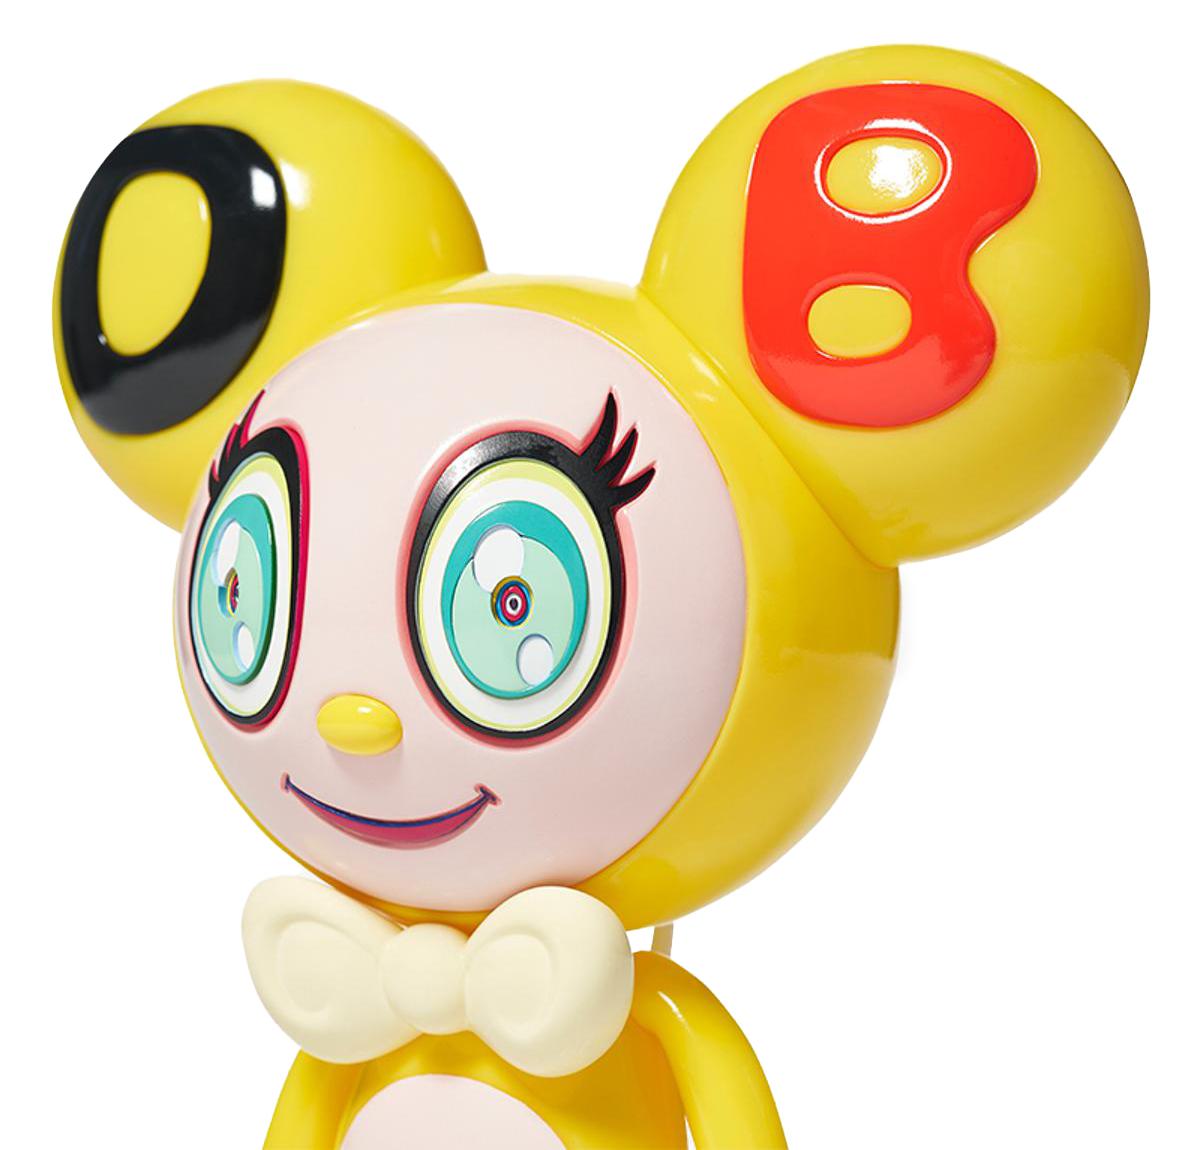 Takashi Murakami DOB-kun Figure (Takashi Murakami Mr. Dob) :
Un jouet d'art Takashi Murakami Mr. DOB en édition limitée, à l'effigie du personnage emblématique de l'artiste, DOB. Le nom de DOB-kun, défini par ses oreilles et son visage arrondis,